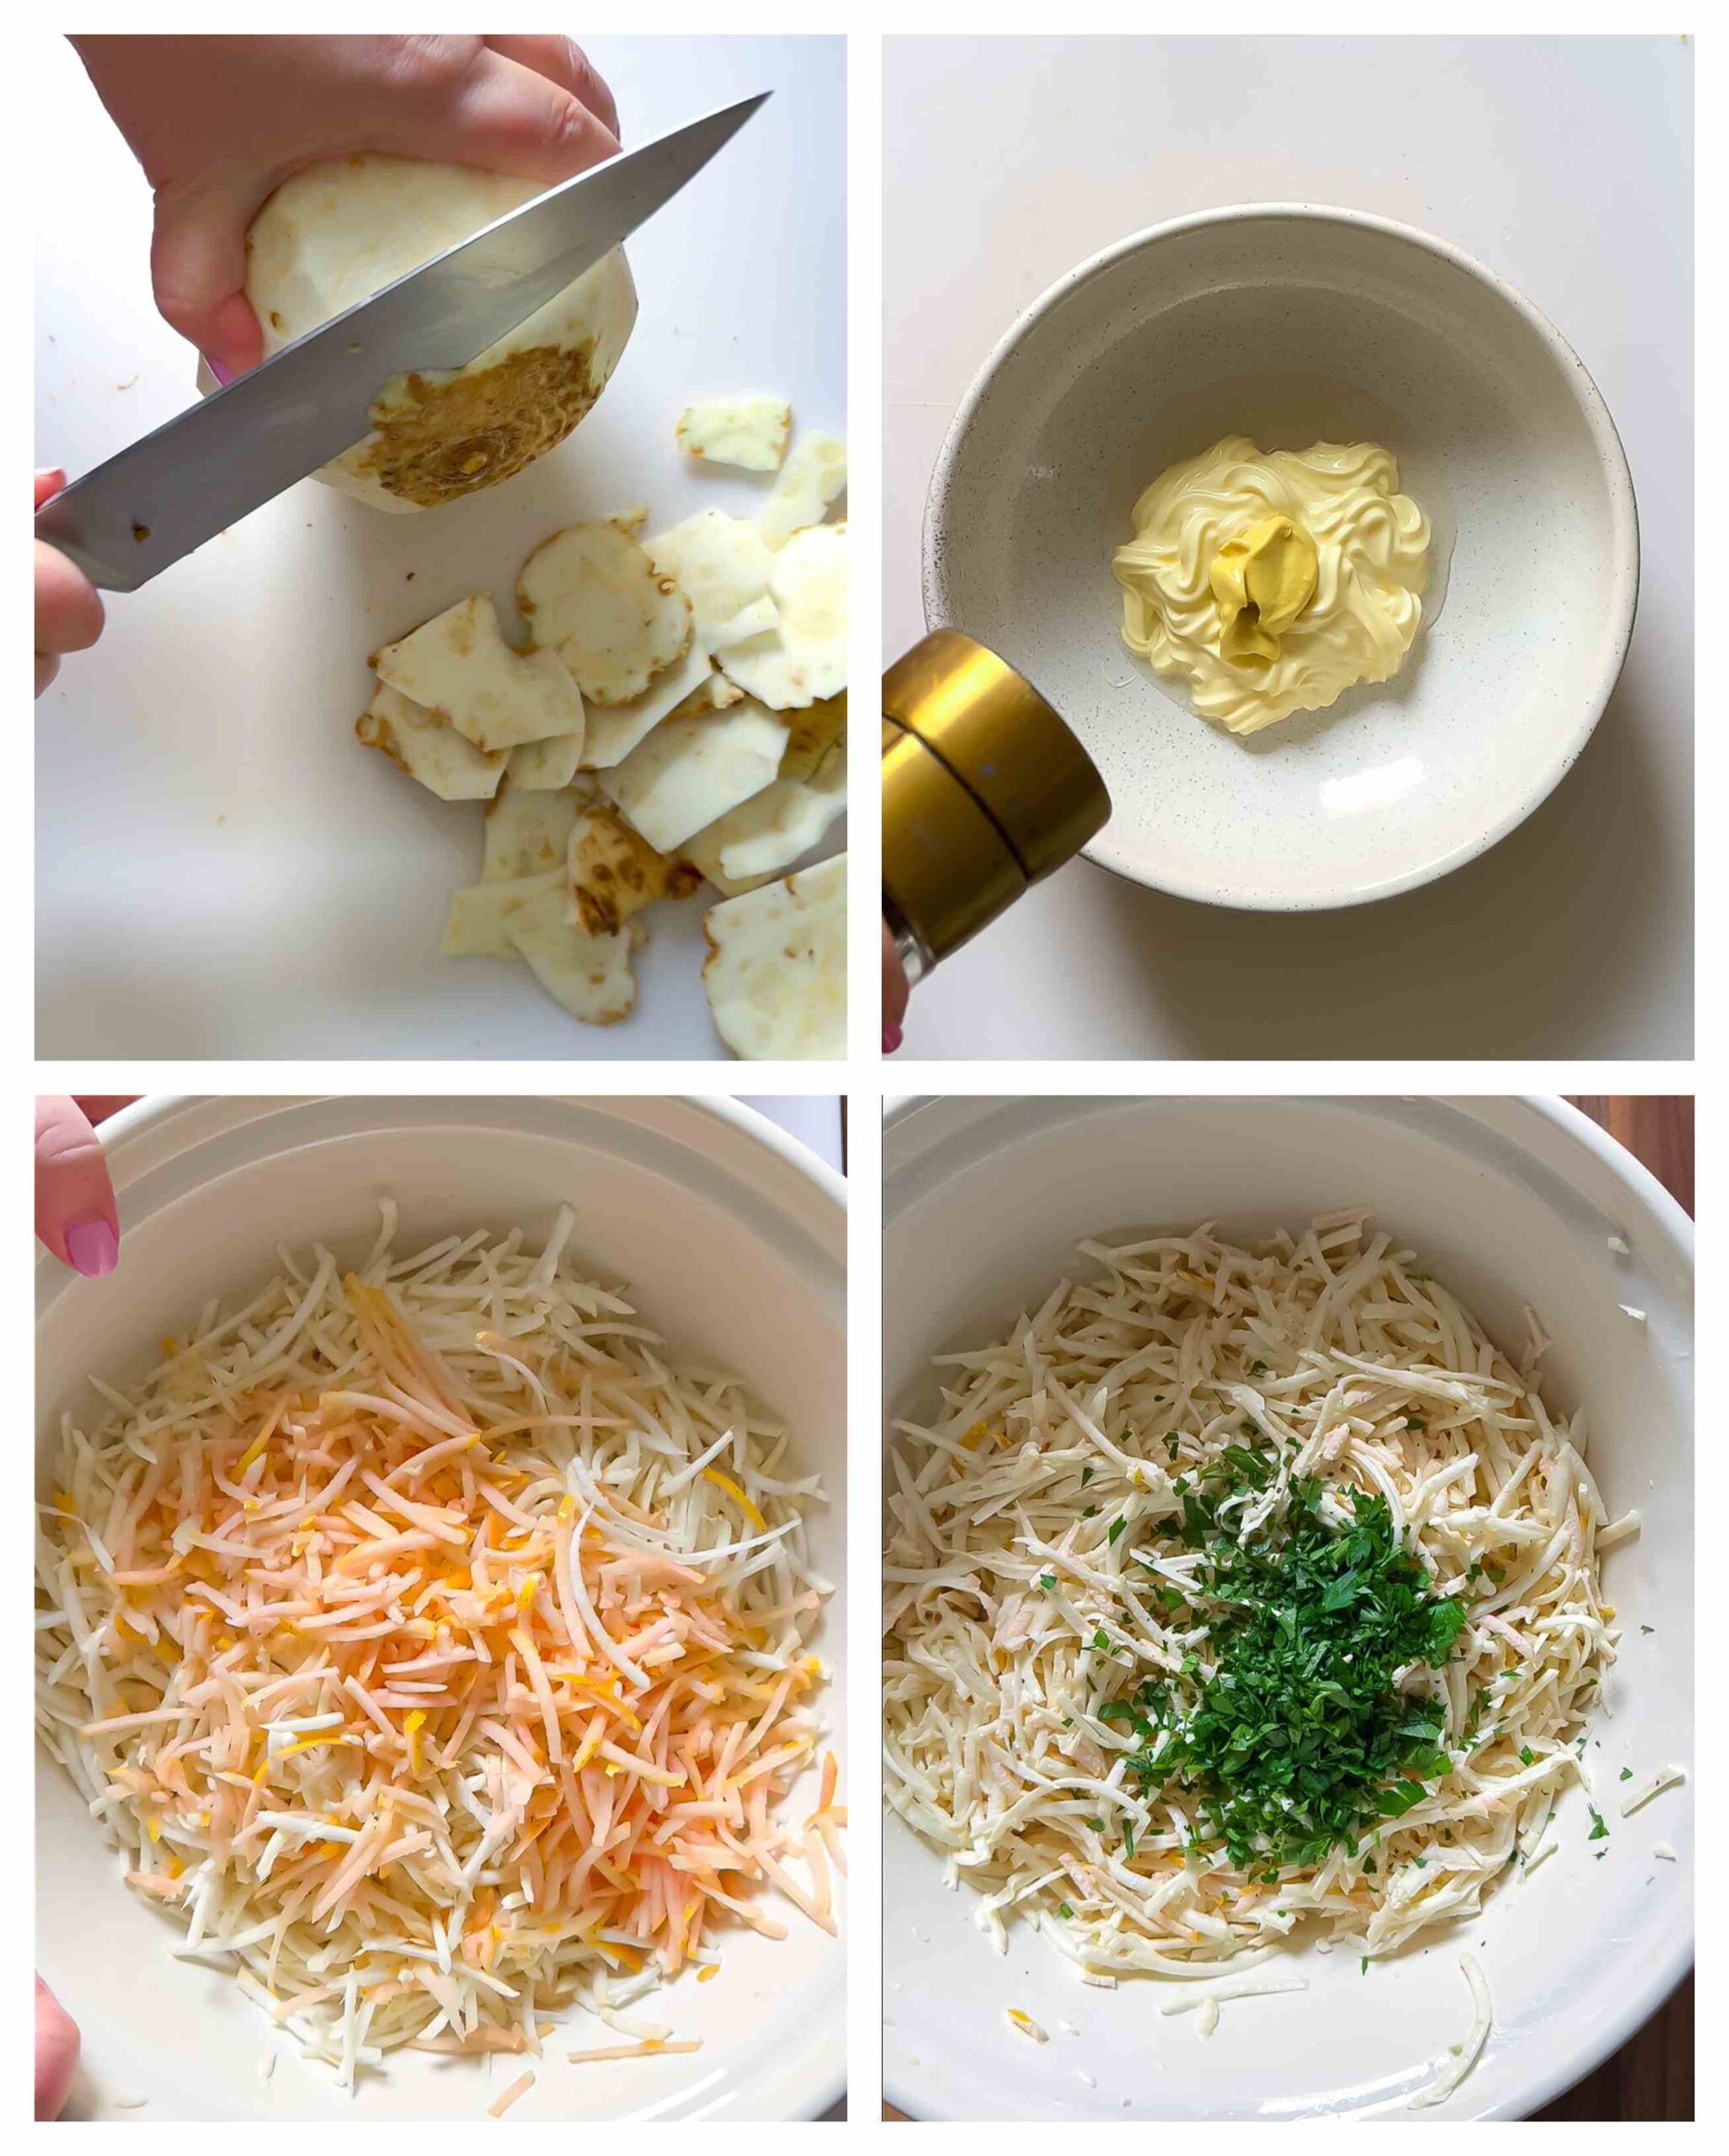 celeriac remoulade recipe process images